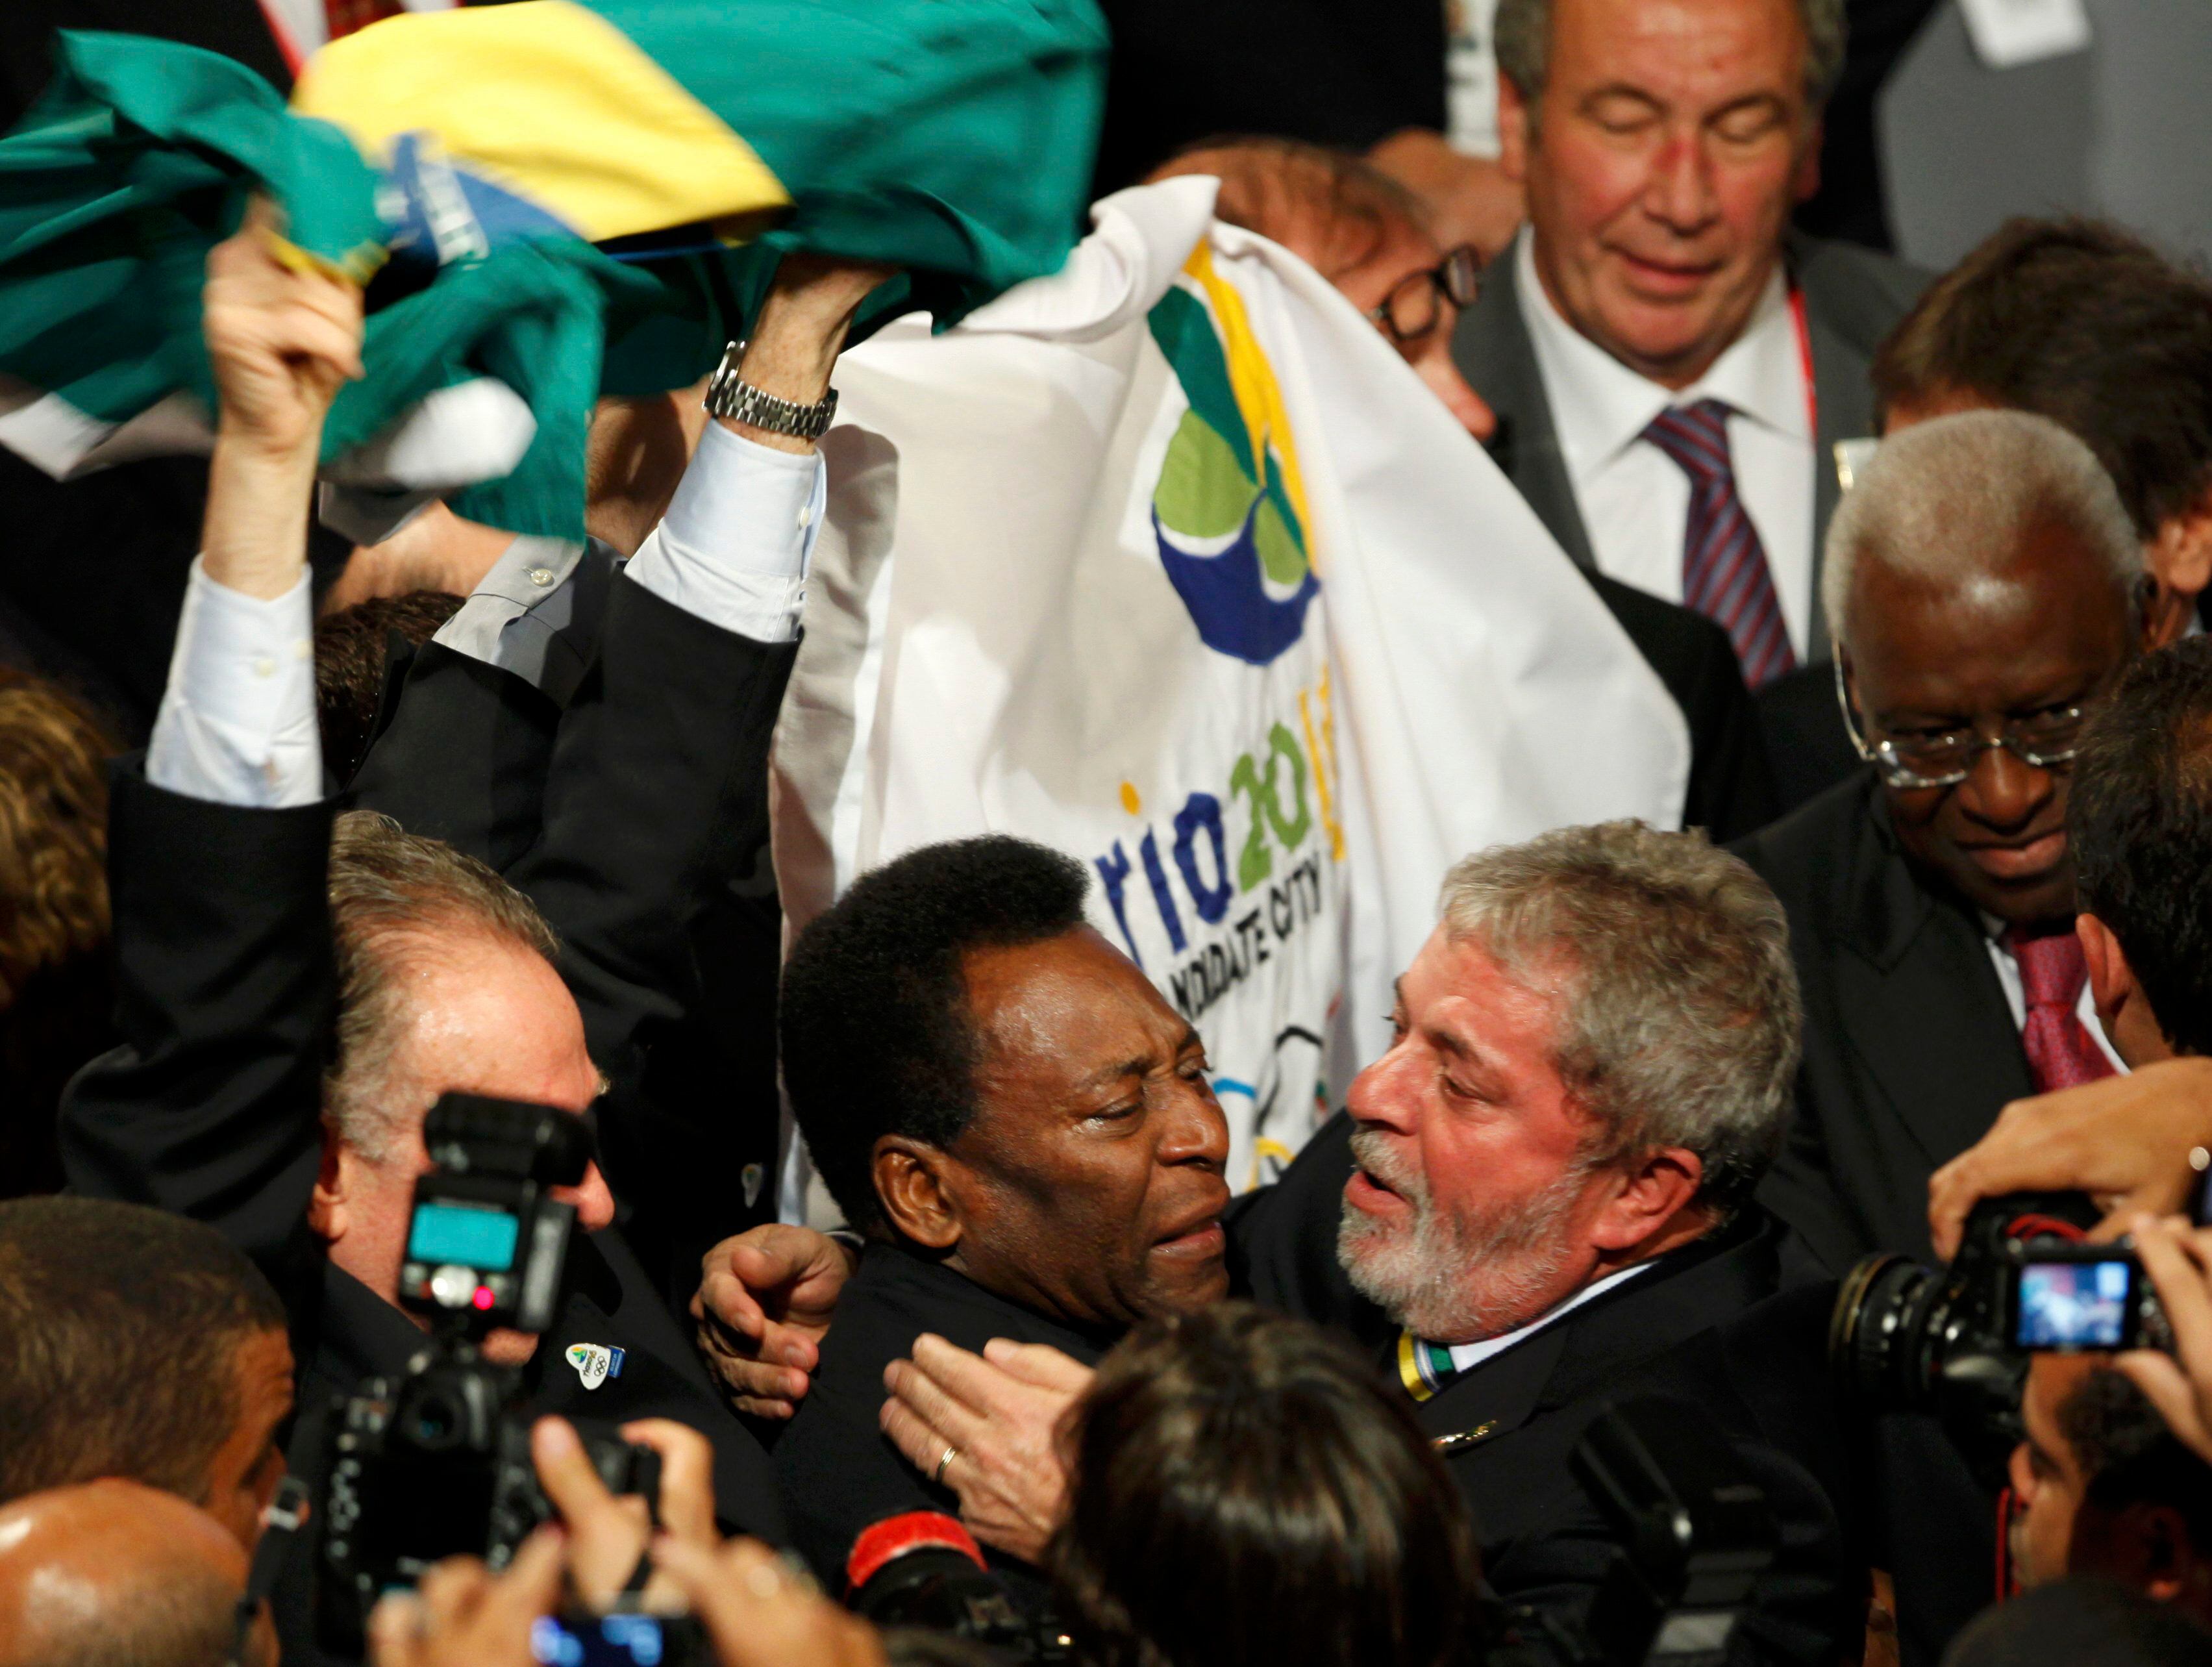 El presidente de Brasil, Luis Inacio Lula da Silva, abraza al futbolista, que llora de alegría tras la victoria de Río de Janeiro en la votación del Comité Olímpico Internacional (COI) en Copenhague (Dinamarca) para organizar los Juegos Olímpicos del 2016, venciendo a Madrid en la última ronda, en 2009.